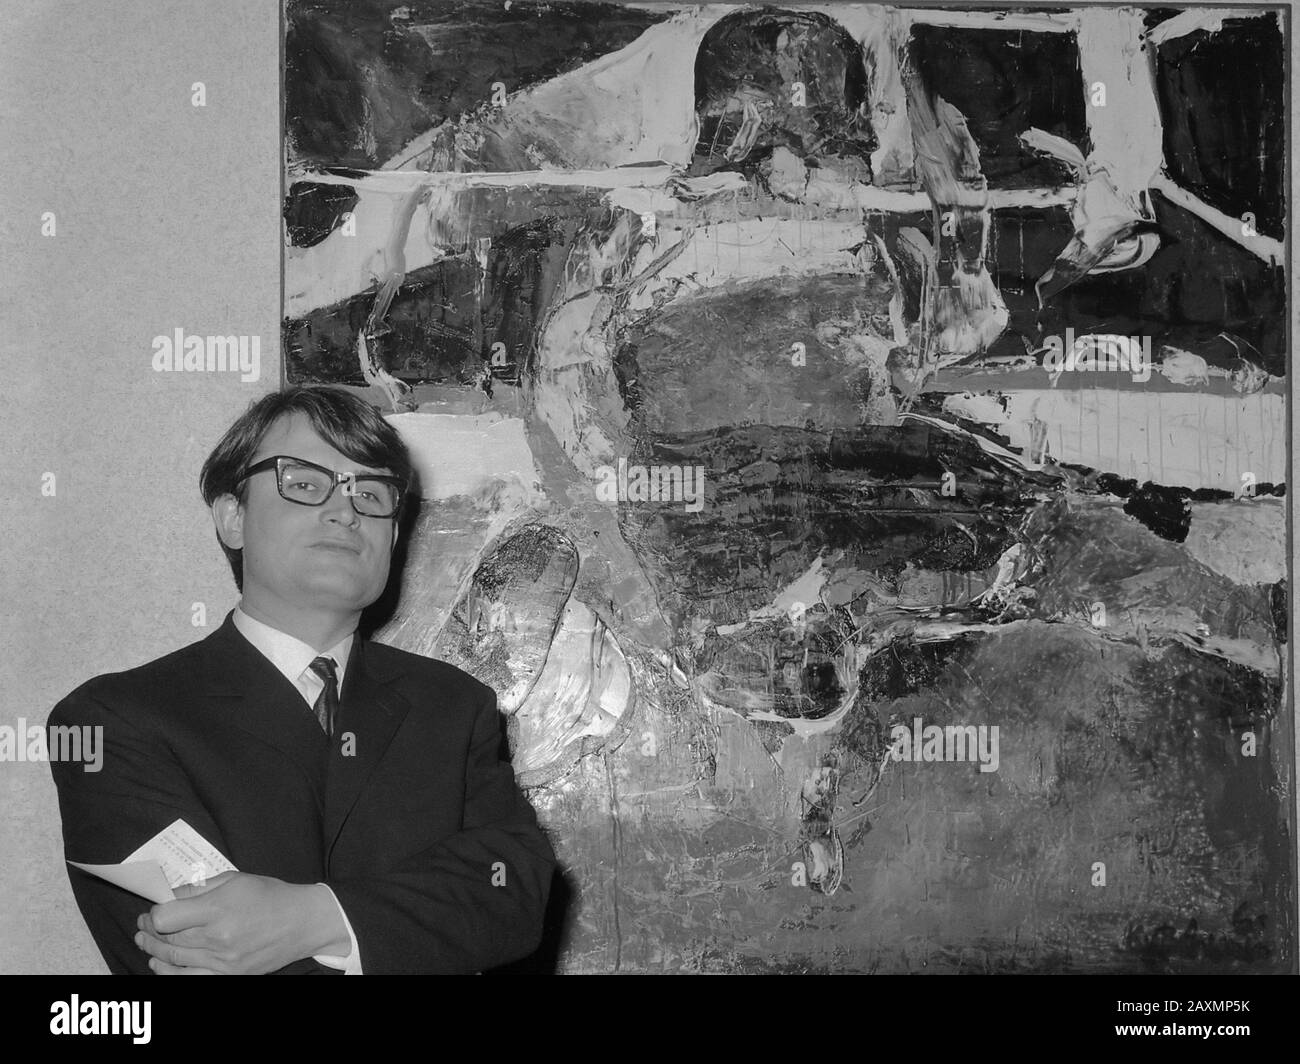 Wedgwoodprijs 1966 voor Kees van Bohemen, hier voor zijn schilderstuk en el Museo Fodor, 14 januari 1966 Foto de stock